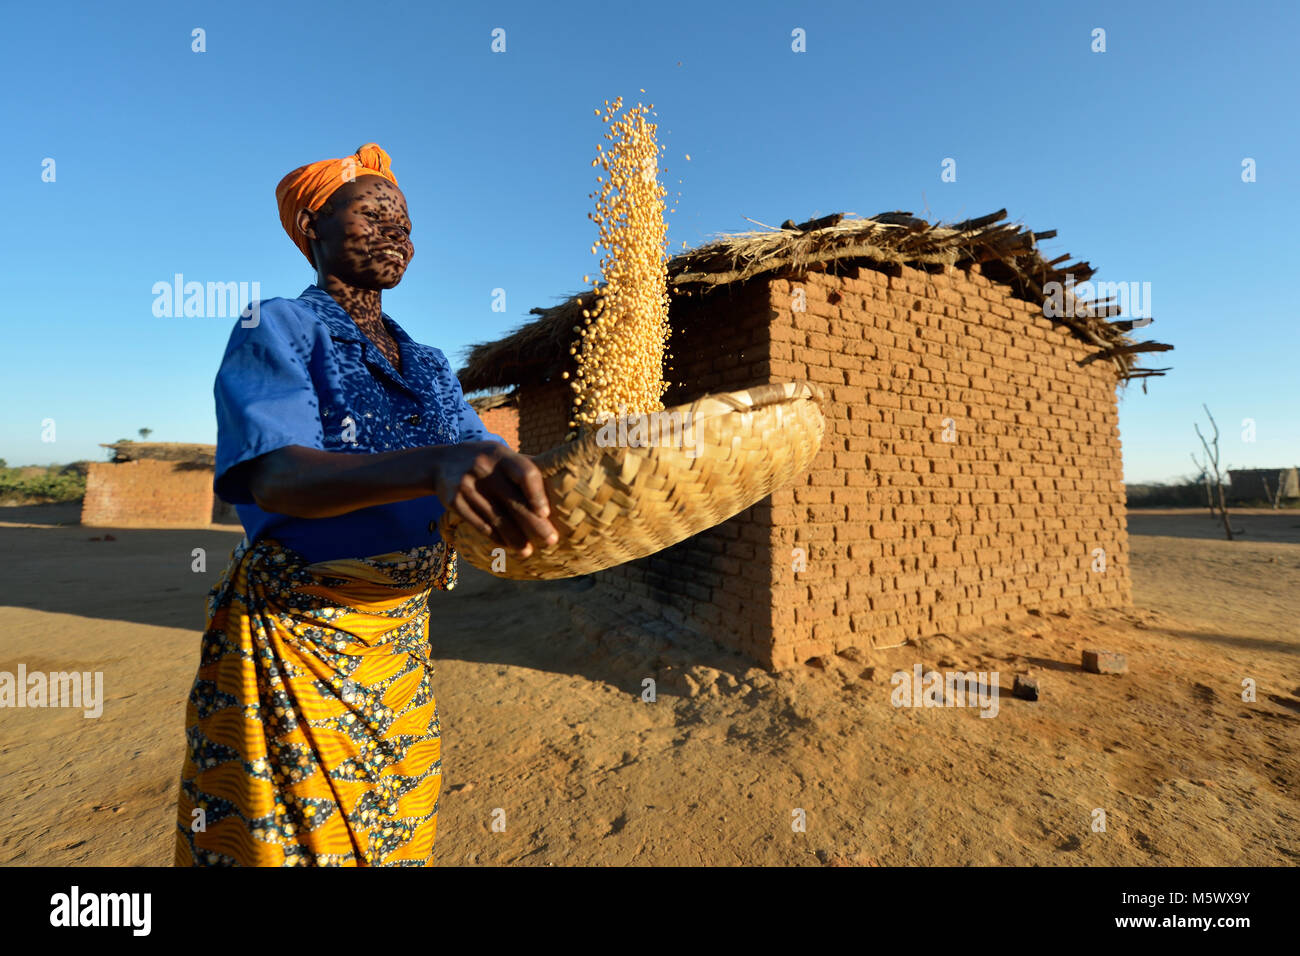 Frances Mtonga winnows corn in Chibamu Jere, Malawi. Stock Photo